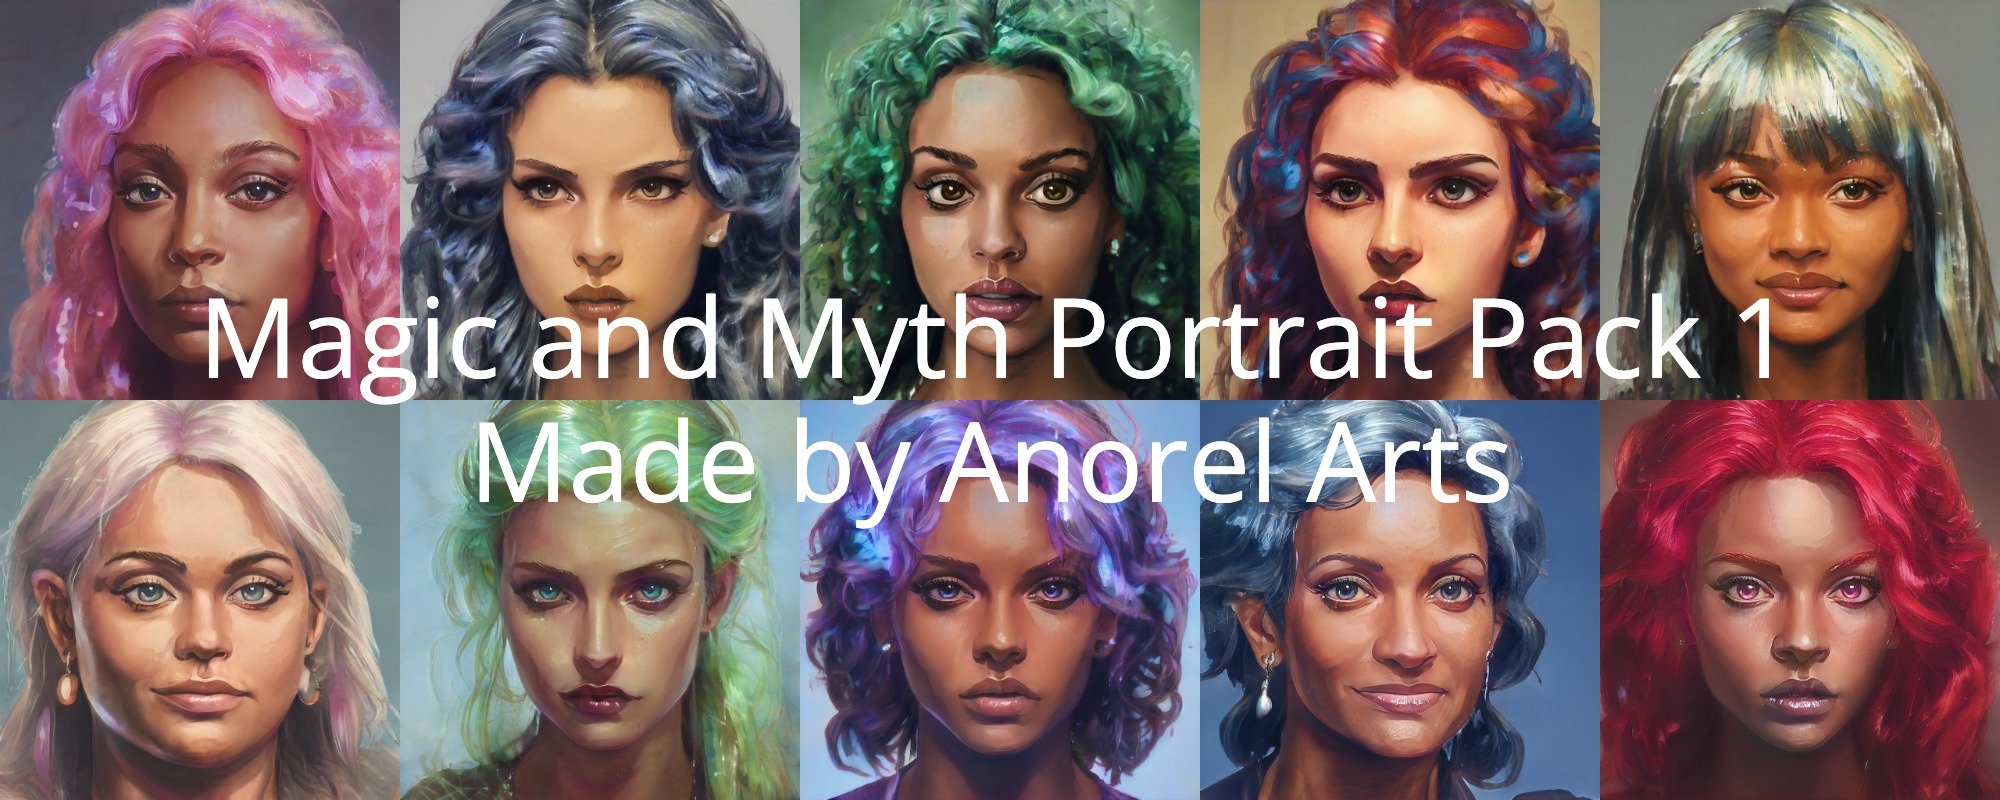 Magic and Myth Portrait Pack 1